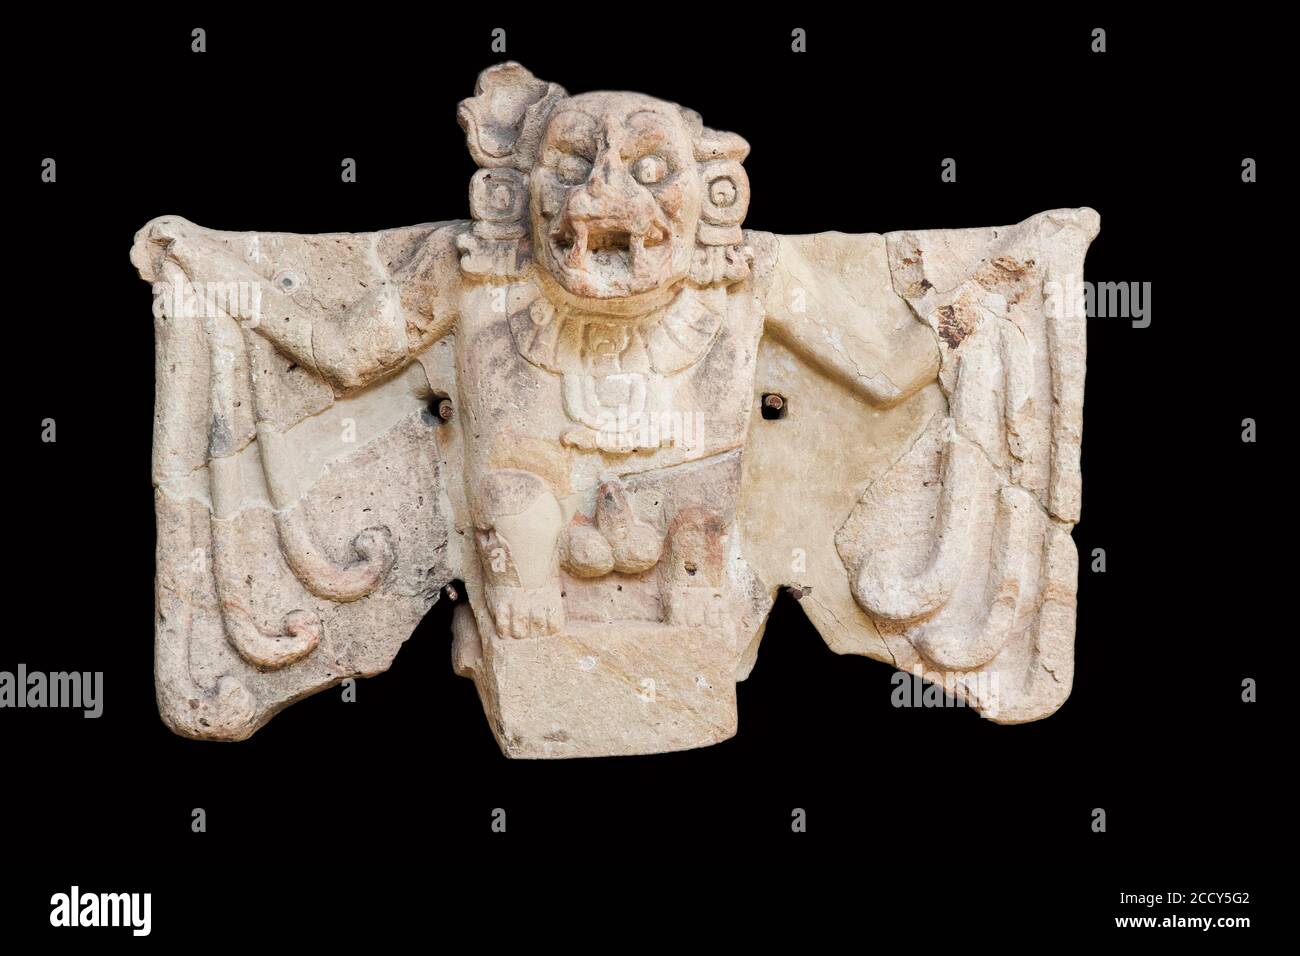 Bat scolpito dal Tempio 20 nell'Acropoli e emblema di CopaÌn, Museo Archeologico, Villaggio di Copan Ruinas, Honduras Foto Stock